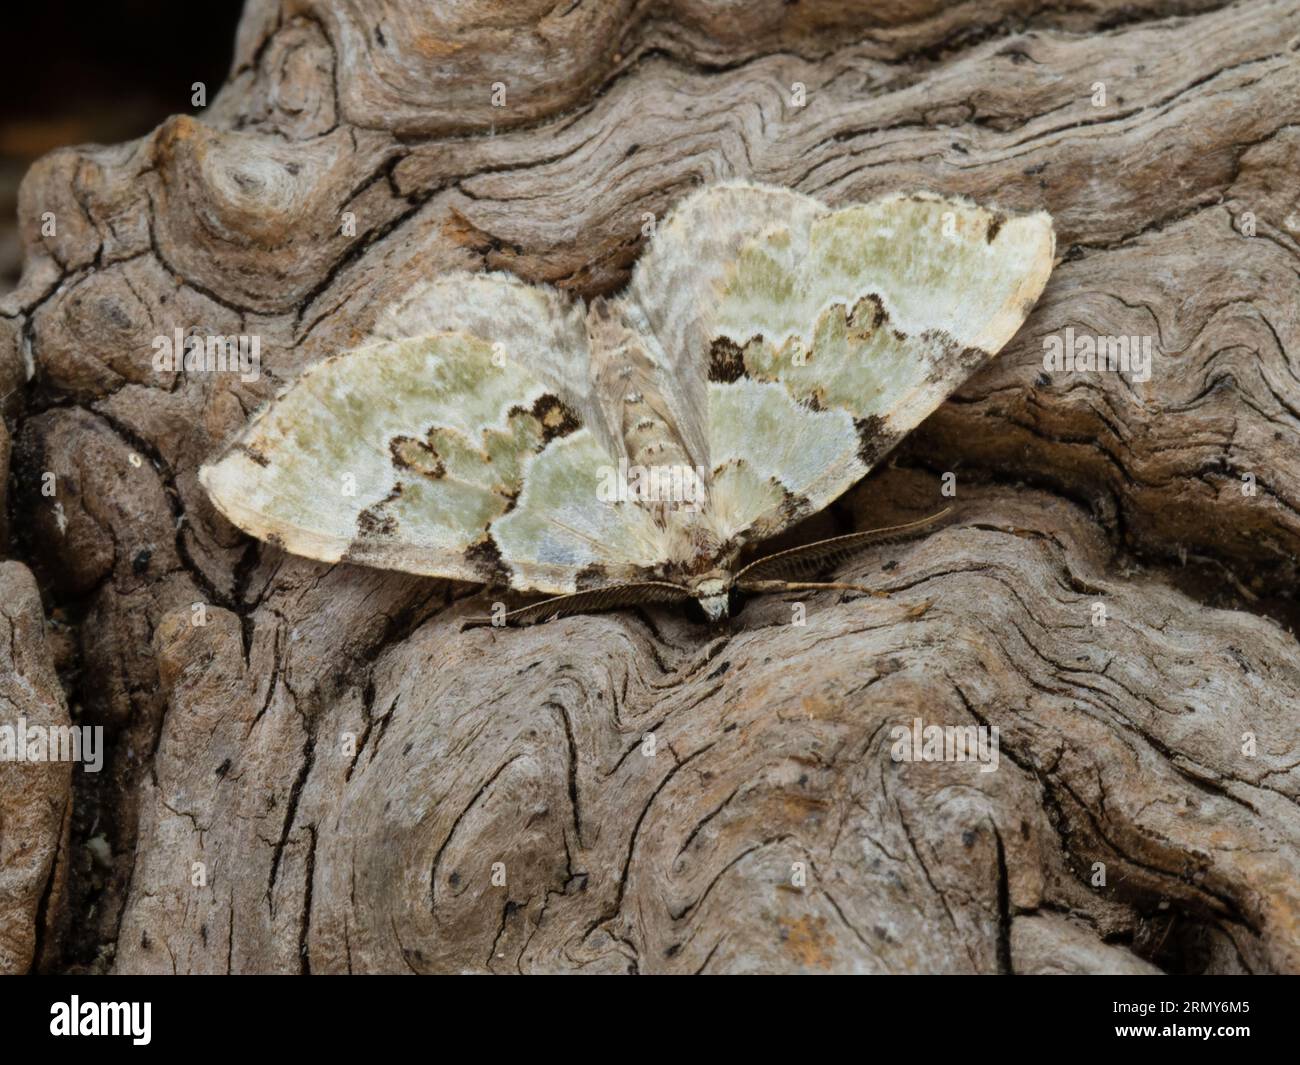 Colostygia pectinataria, le papillon vert du tapis, reposant sur une souche d'arbre pourrie. Banque D'Images